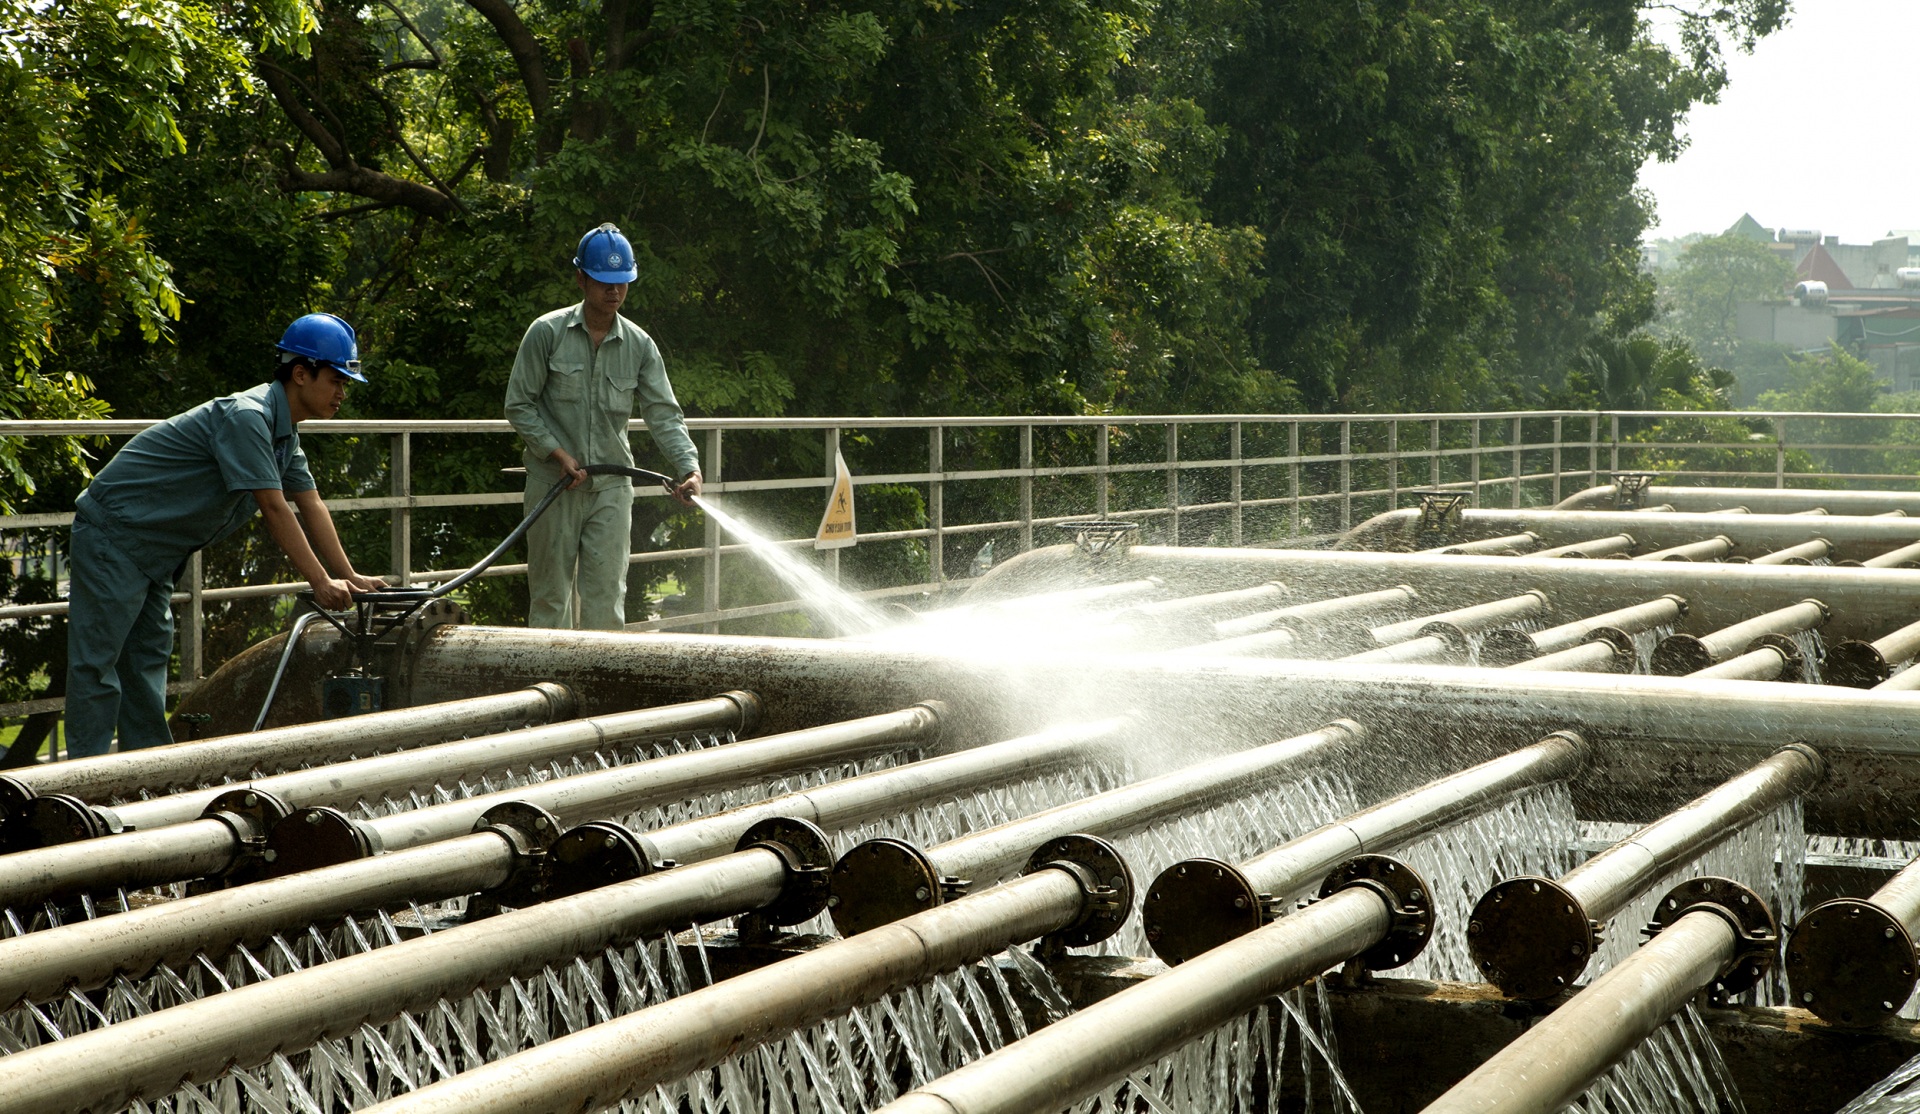 Tăng cường quản lý hoạt động sản xuất, kinh doanh nước sạch, bảo đảm cấp nước an toàn, liên tục